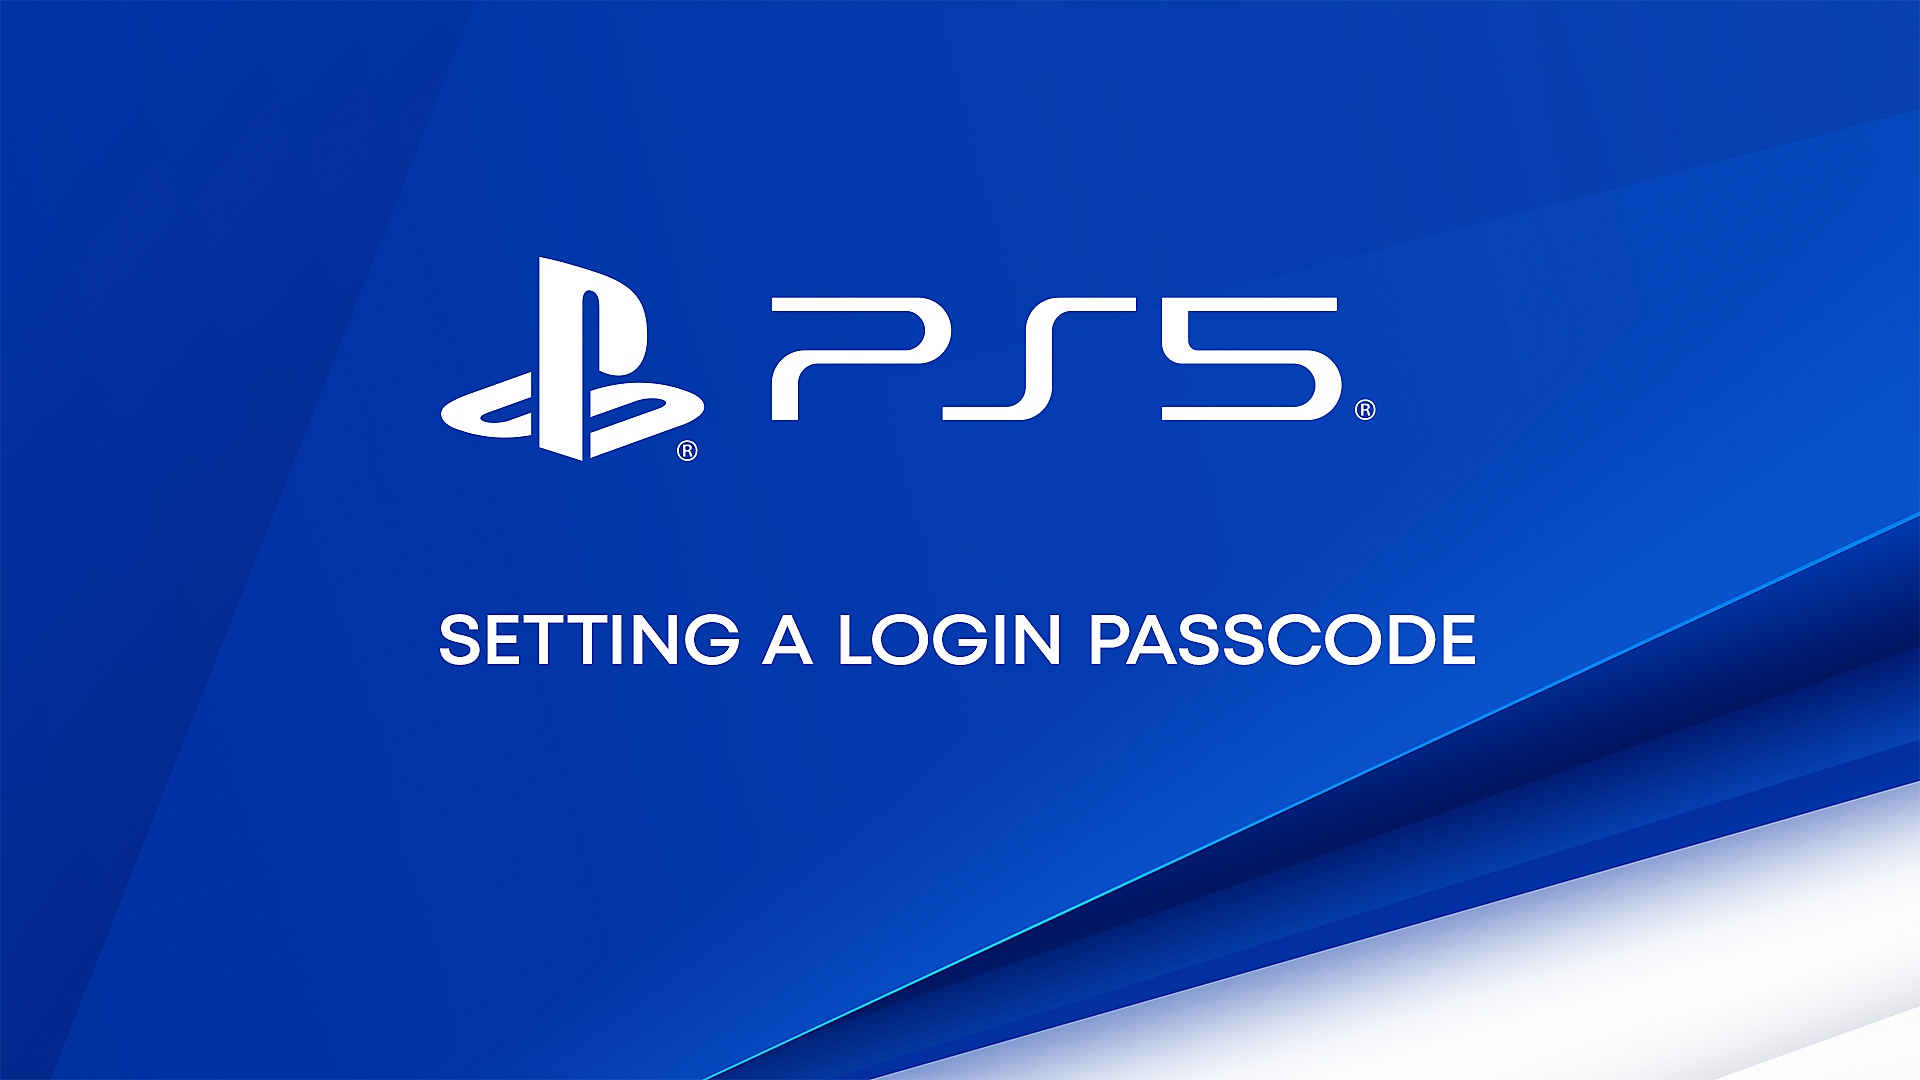 影片示範如何在PS5上設定登入通行碼